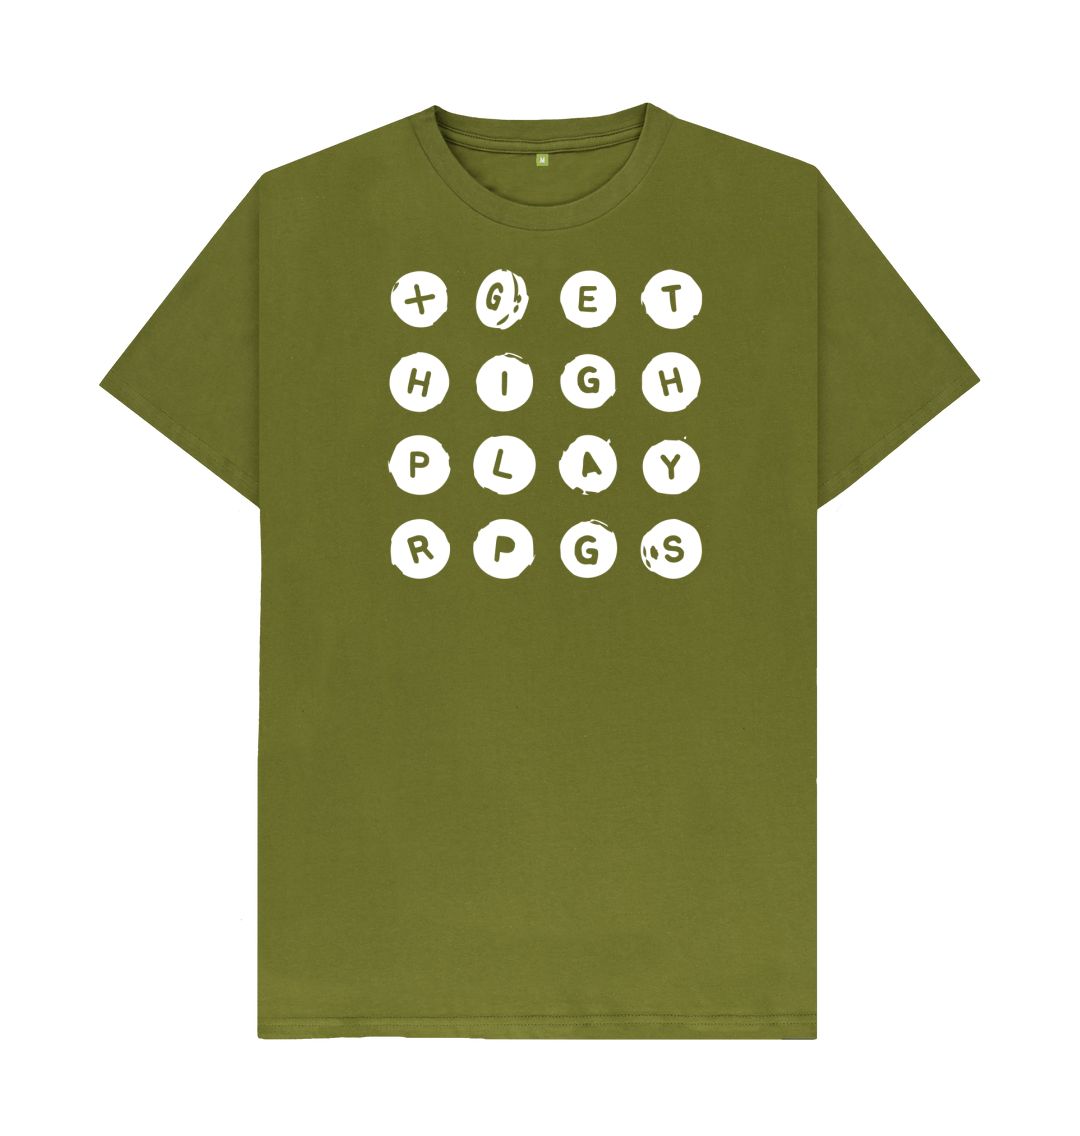 Moss Green Get High Play RPGs Logo Shirt